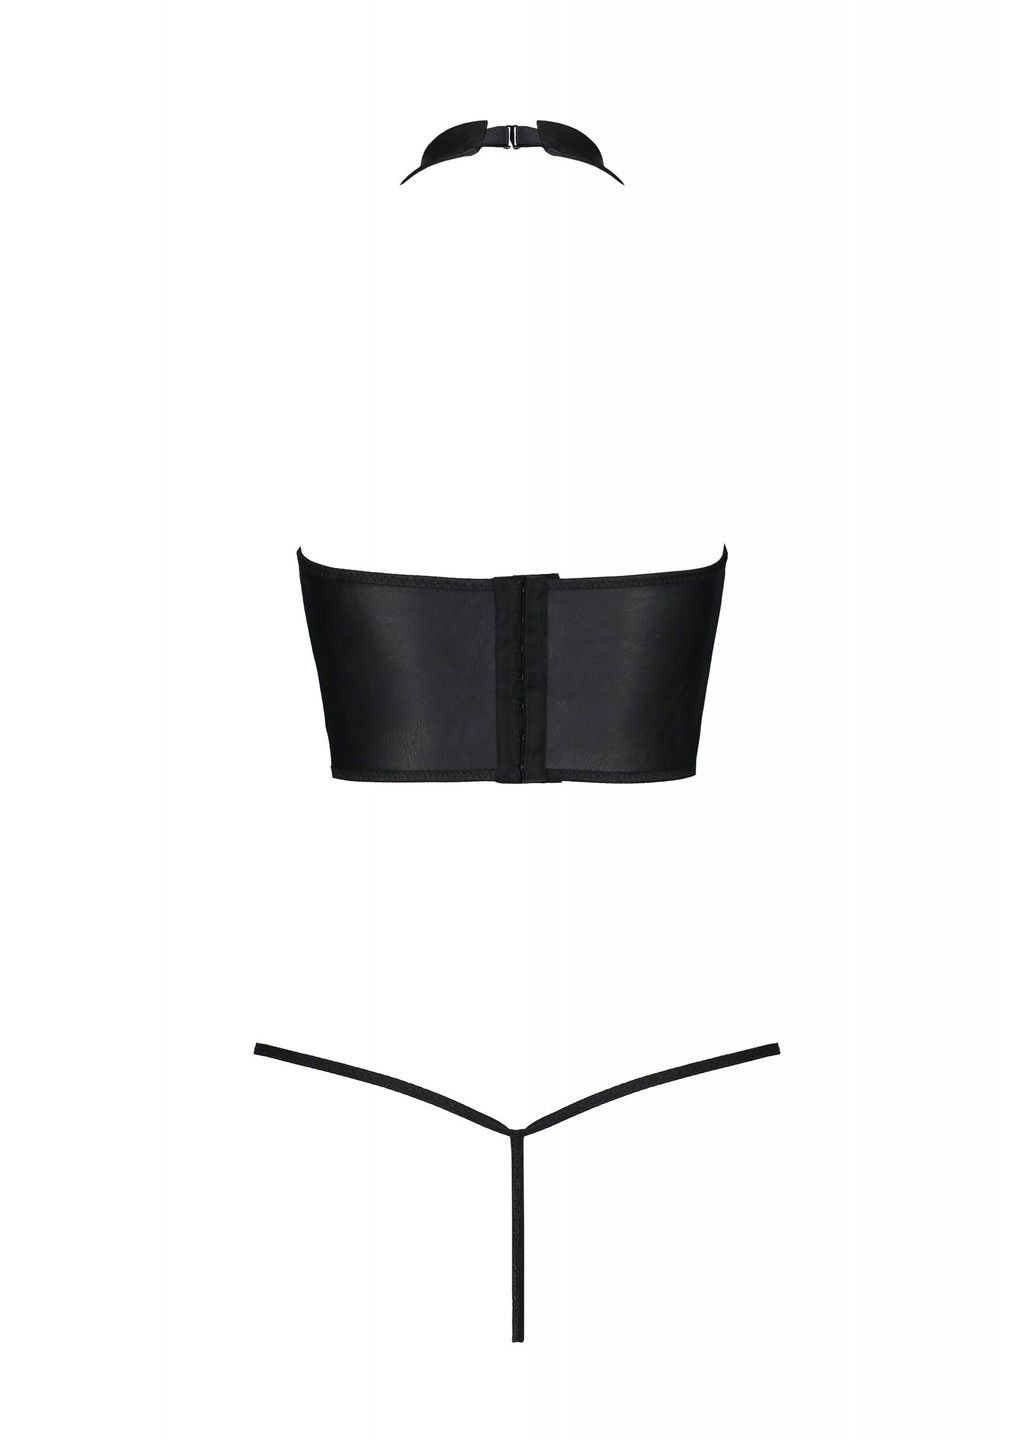 Чорний комплект з еко-шкіри з відкритими грудьми s/m black genevia set with open bra- Passion